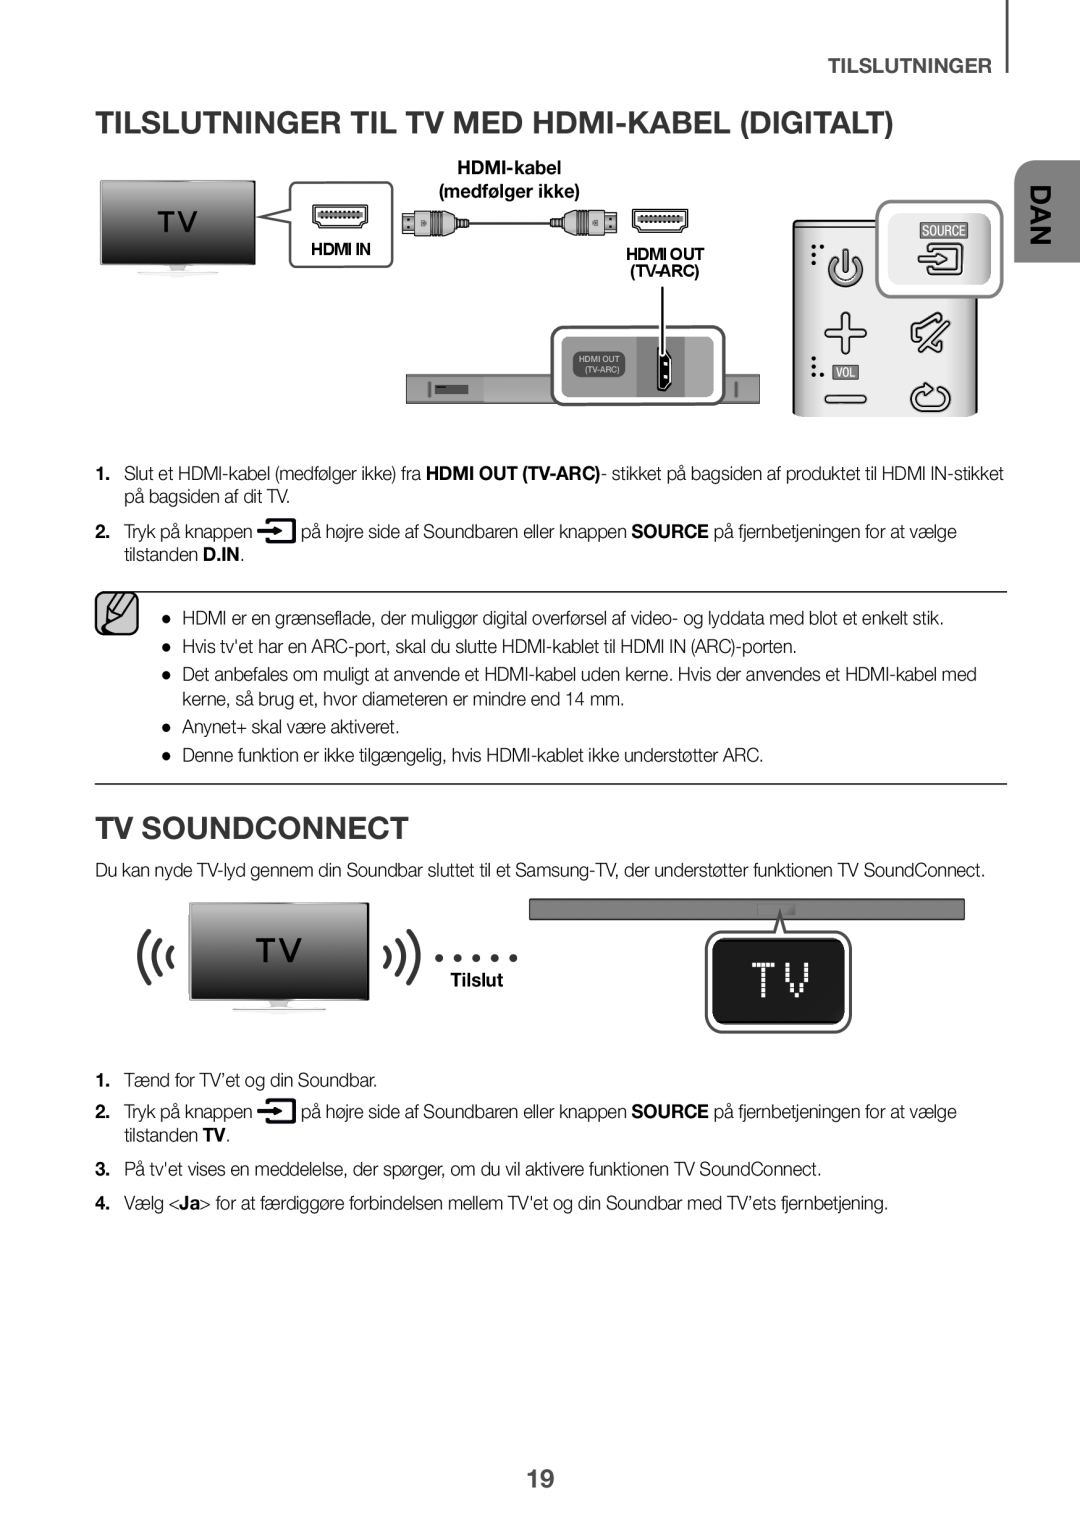 Samsung HW-K651/XN Tilslutninger til tv med HDMI-kabel digitalt, TV SoundConnect, tilslutninger, medfølger ikke, Hdmi In 